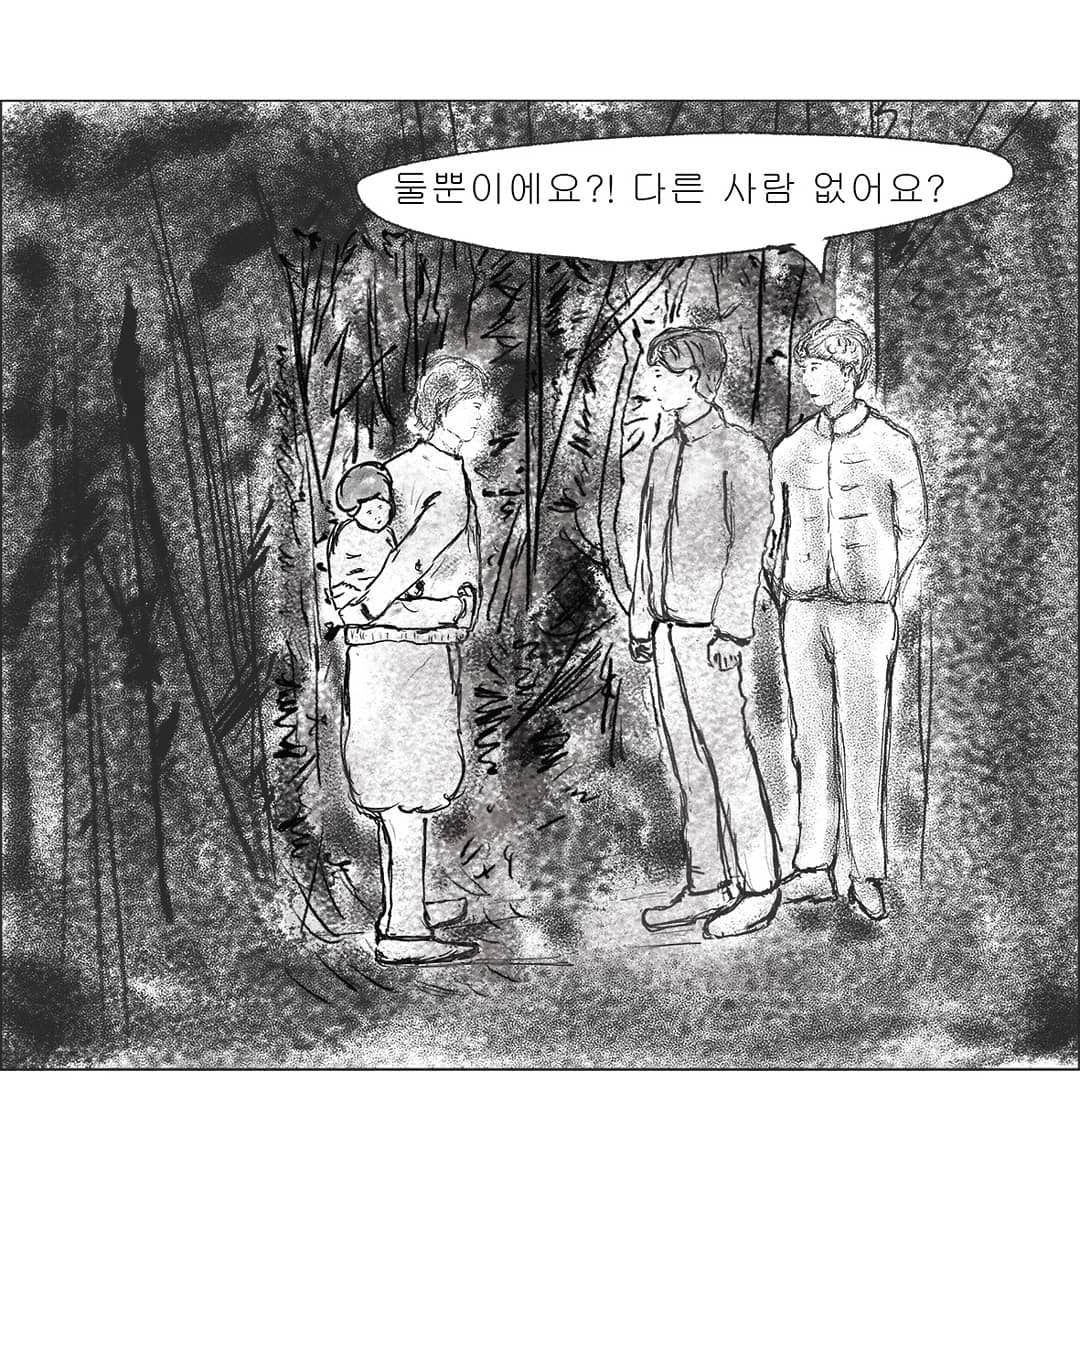 2019년도 인스타툰 '안까이' 장면 07